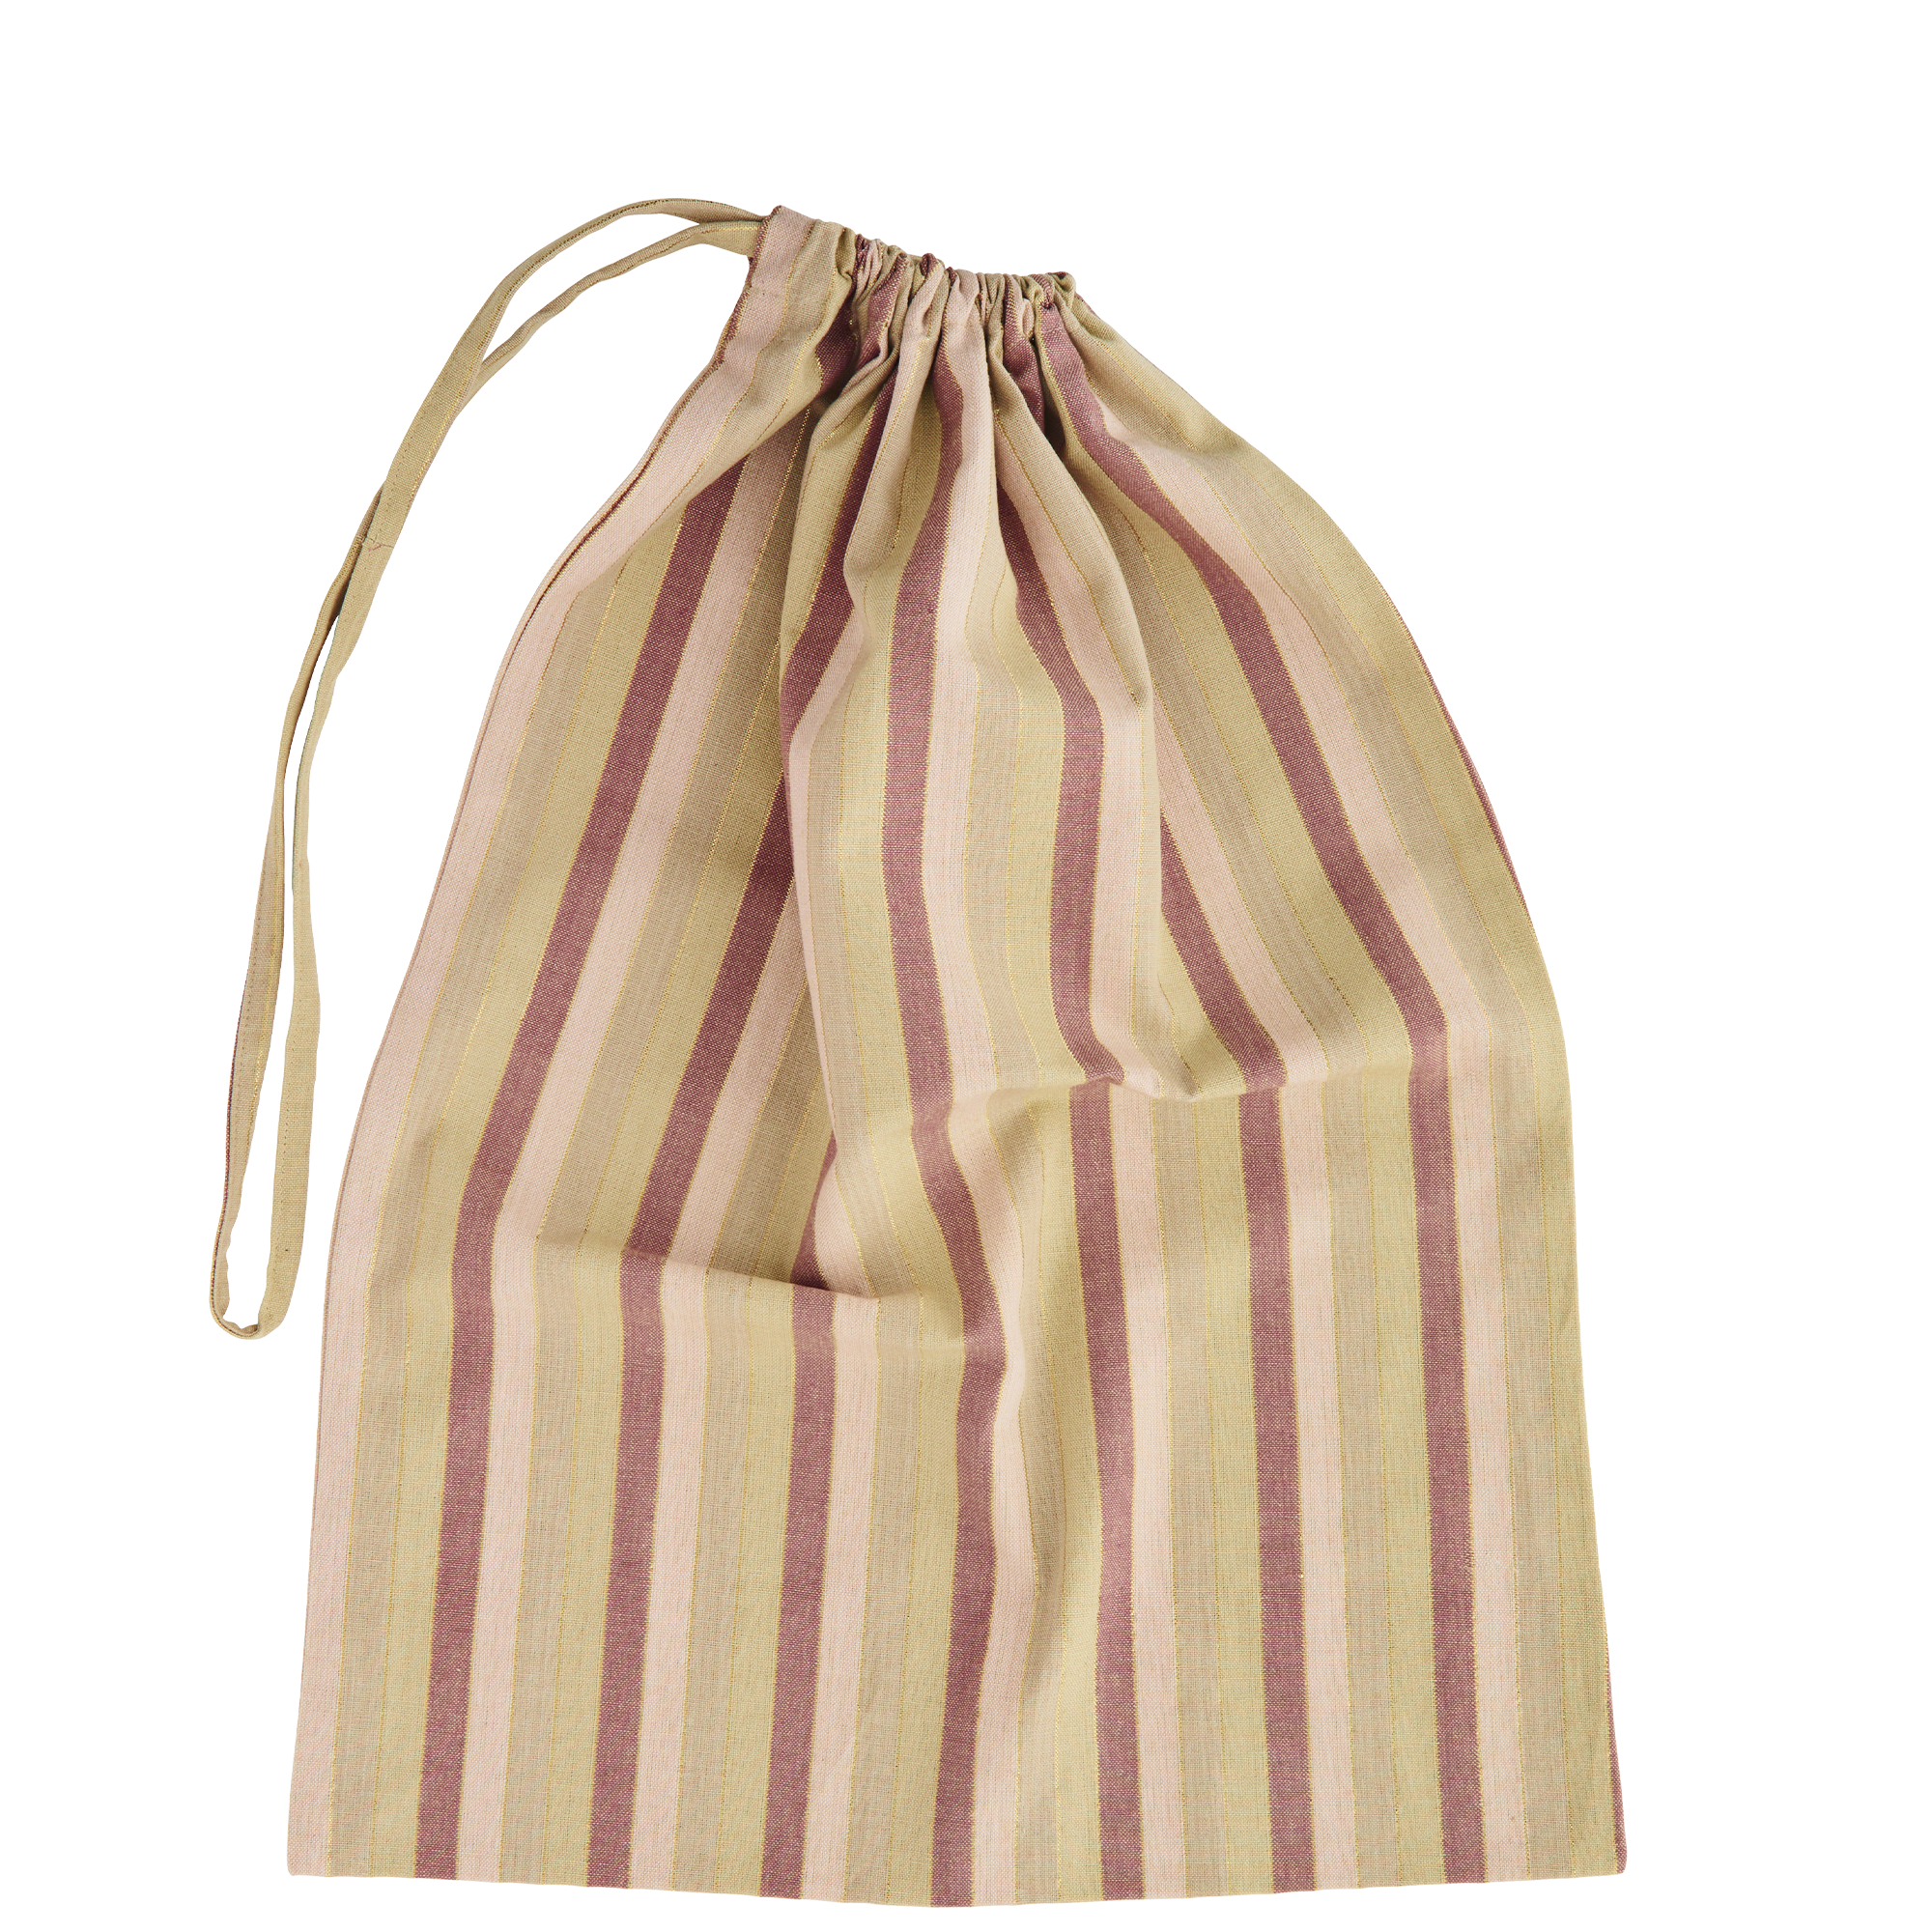 Madam Stoltz Peach and Caramel Striped Laundry Bag